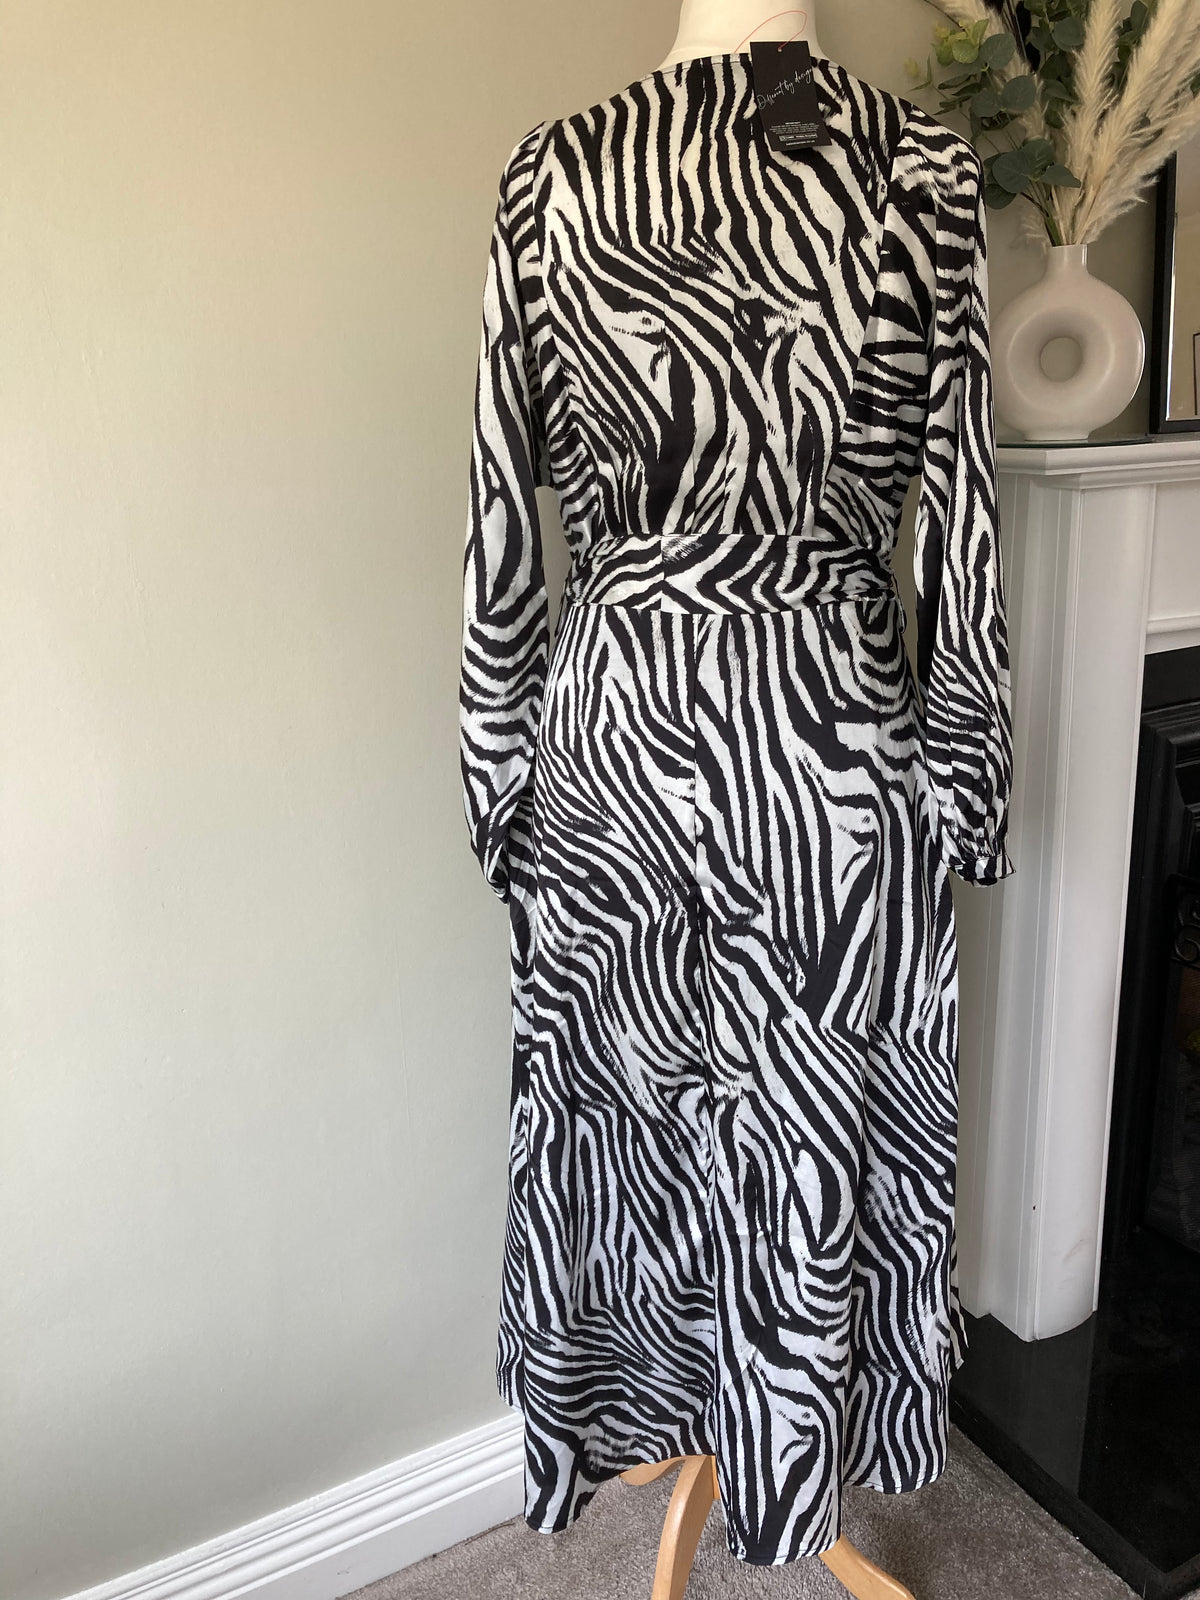 Zebra Print Silk-feel Tie Dress size 12